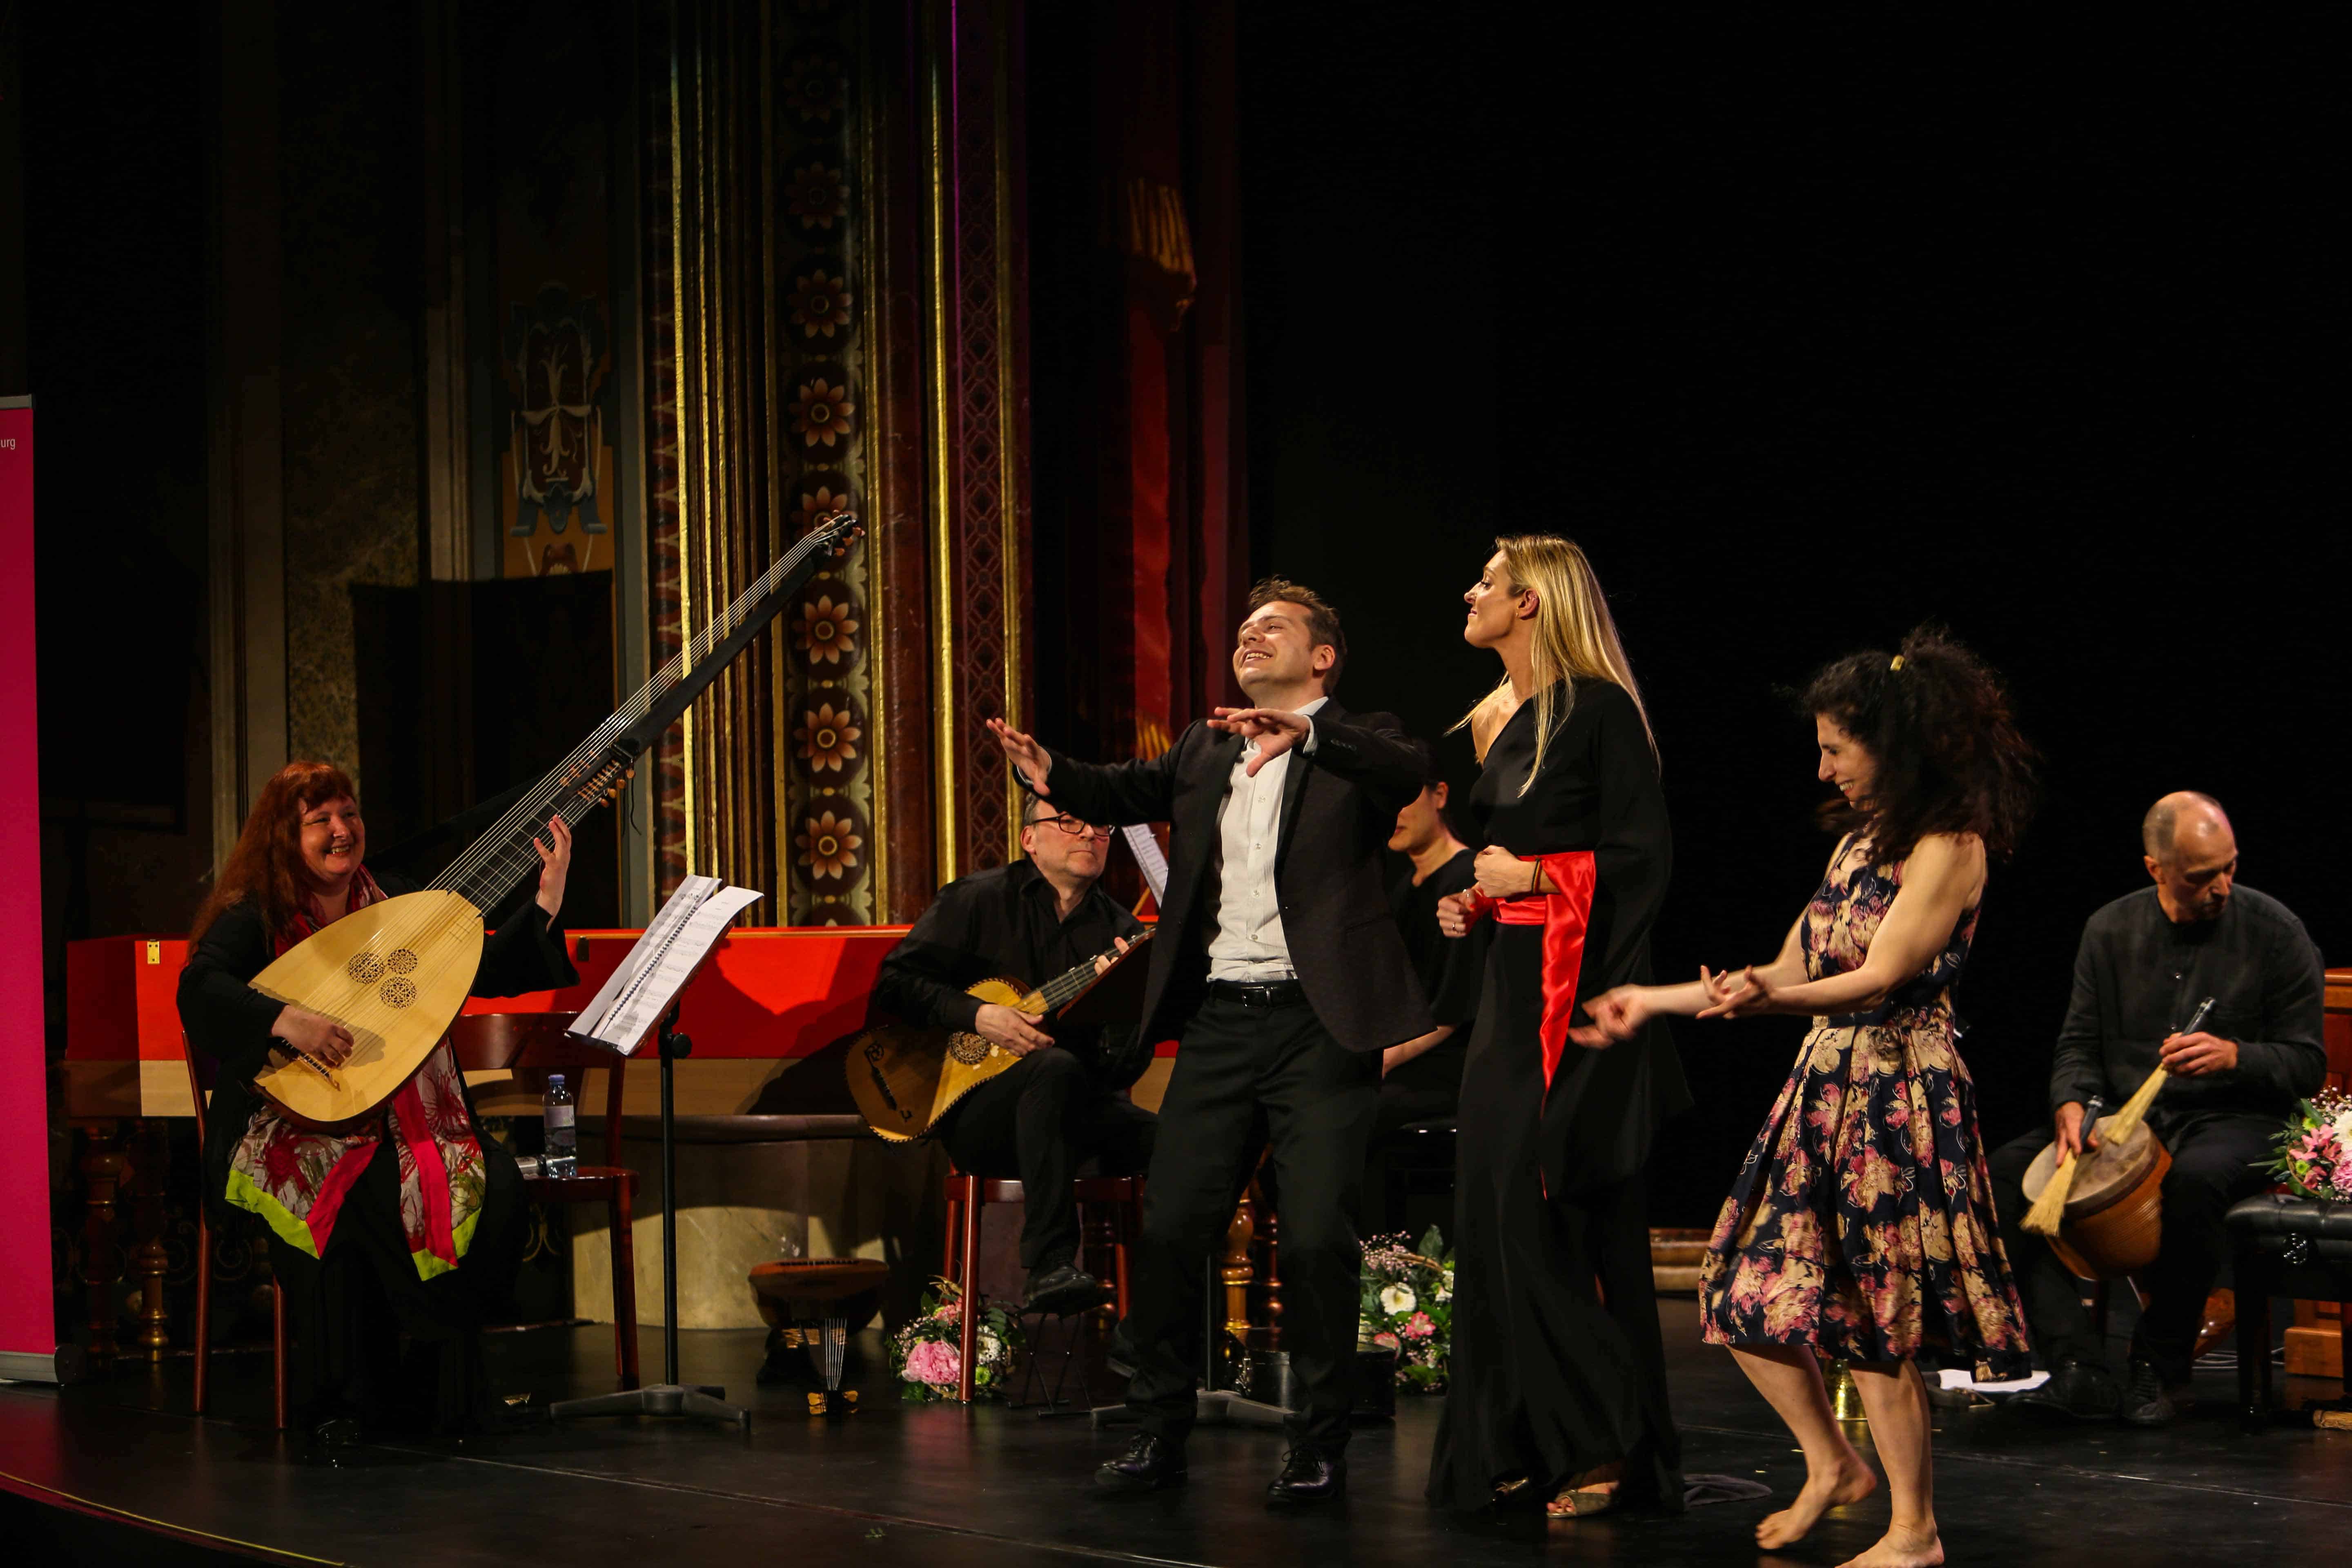 Eröffnungskonzert Mozartfest 2017: Christina Pluhar mit Ensemble L'Arpeggiata, Céline Scheen (Sopran), Vincenzo Capezzuto (Alt), Anna Dego (Tanz). Foto (c) Christian Menkel